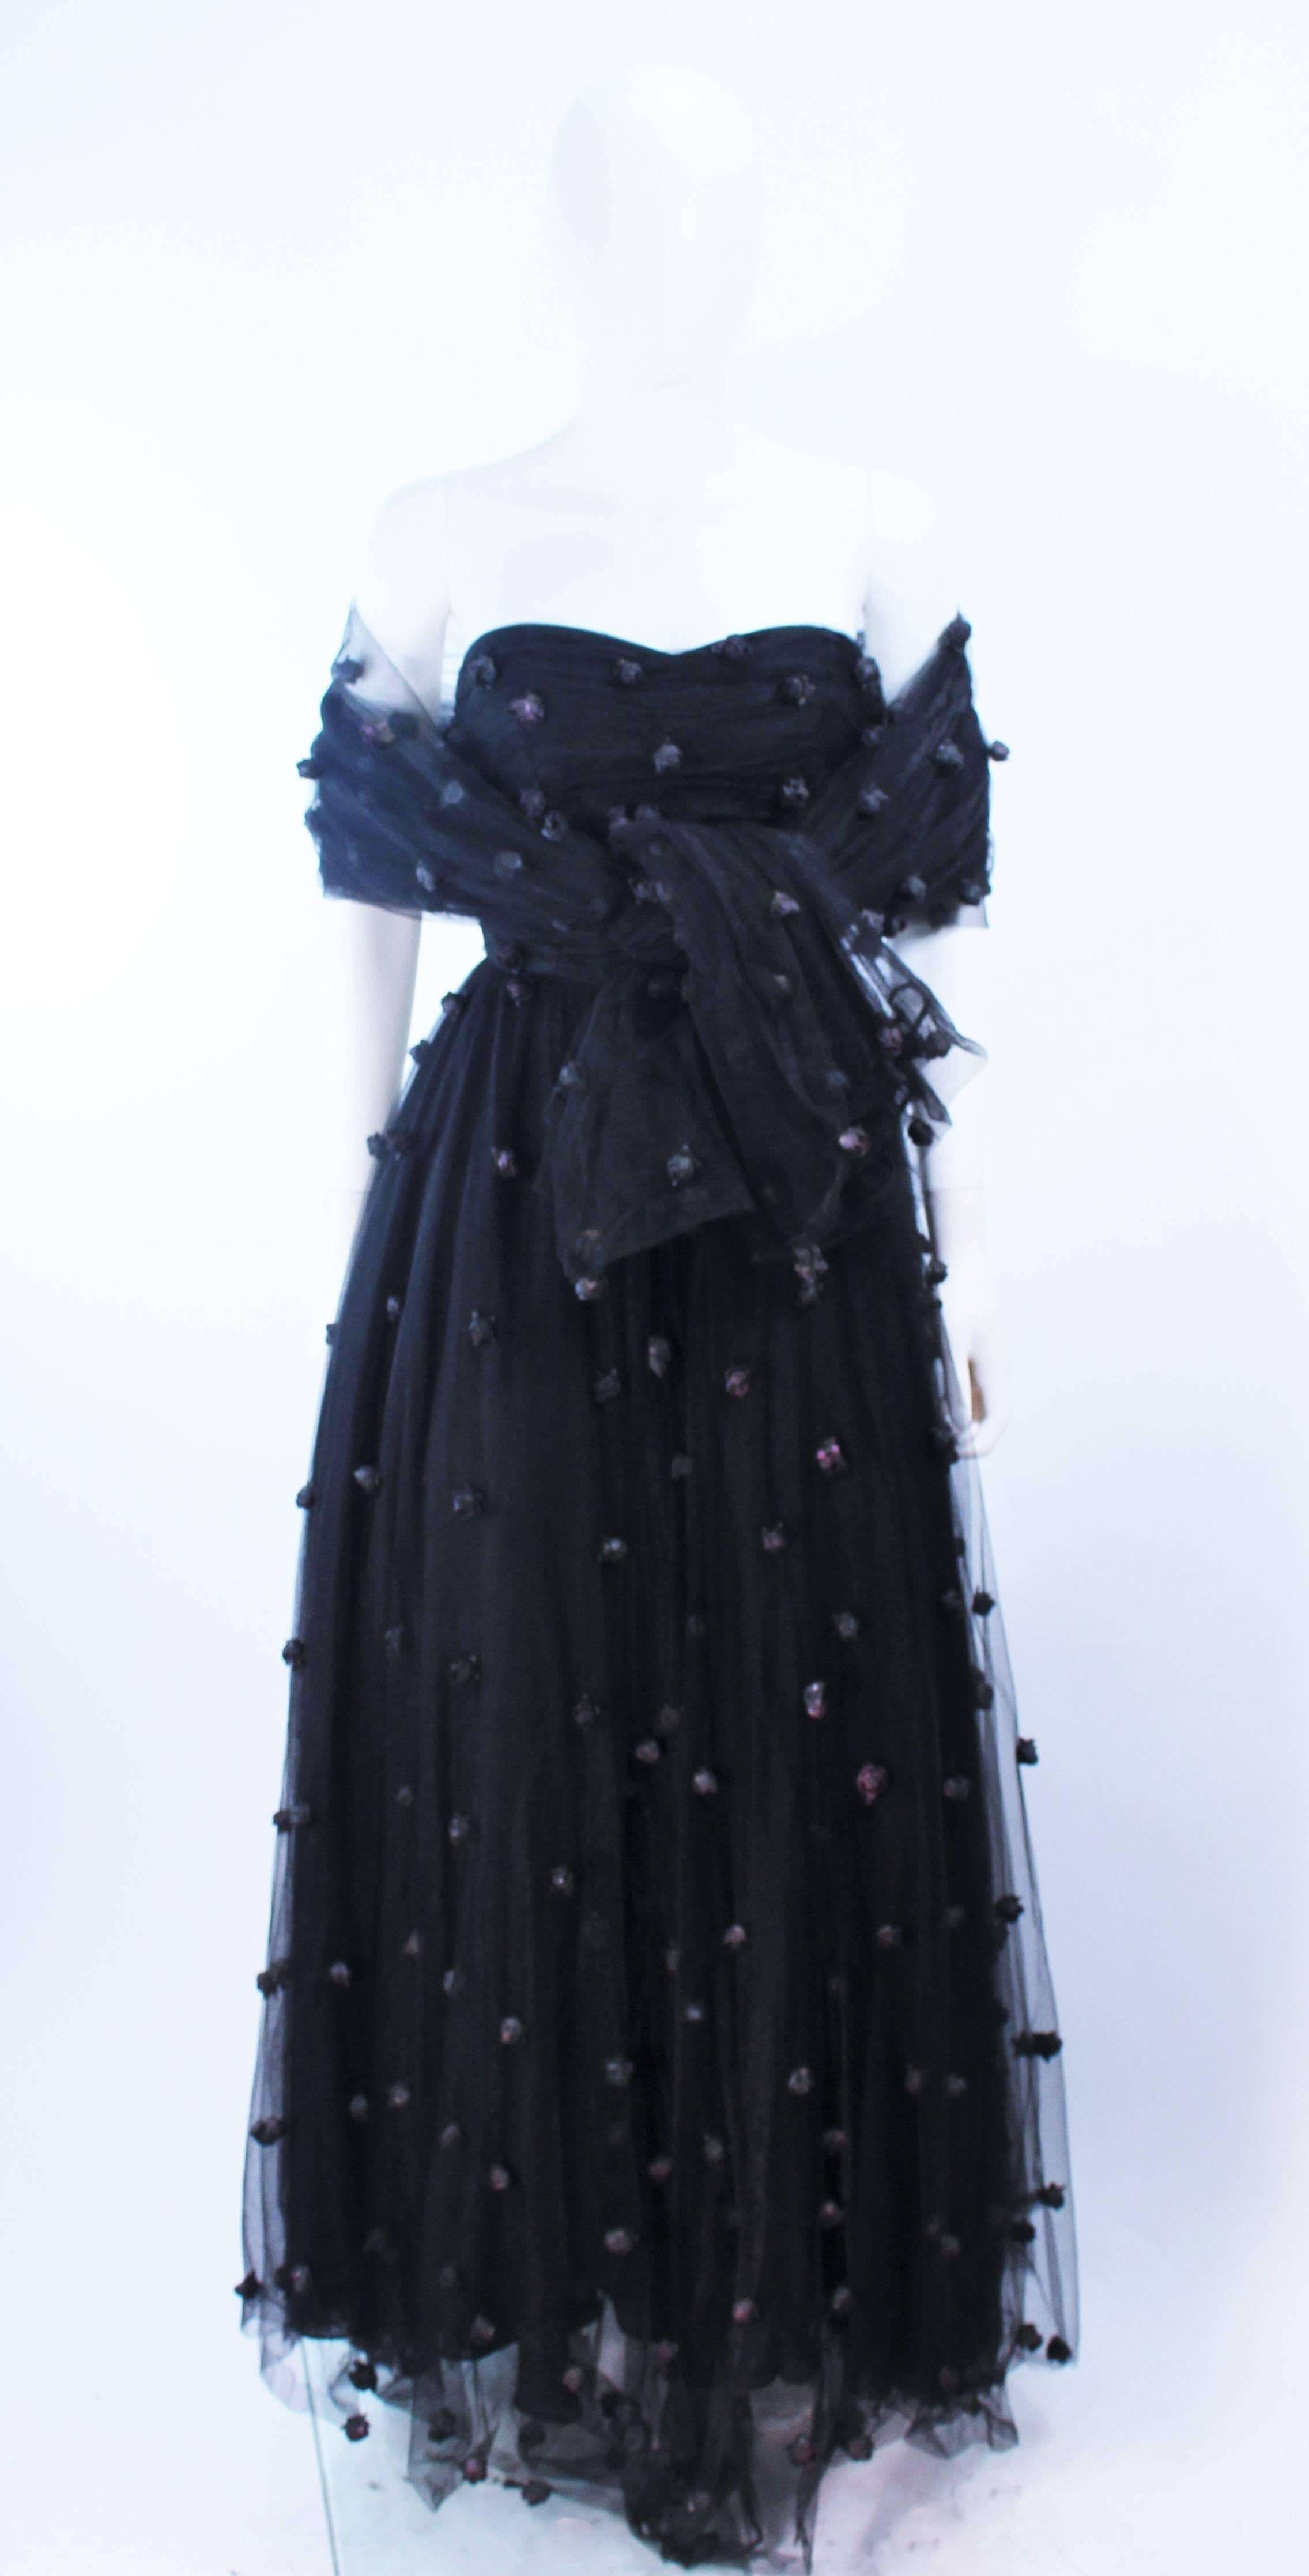 Cette robe attribuée par Pamela Dennis est composée d'une maille noire avec des applications de roses. Il y a une fermeture à glissière au centre du dos. En excellent état vintage, l'étiquette est manquante.

**Veuillez croiser les mesures pour